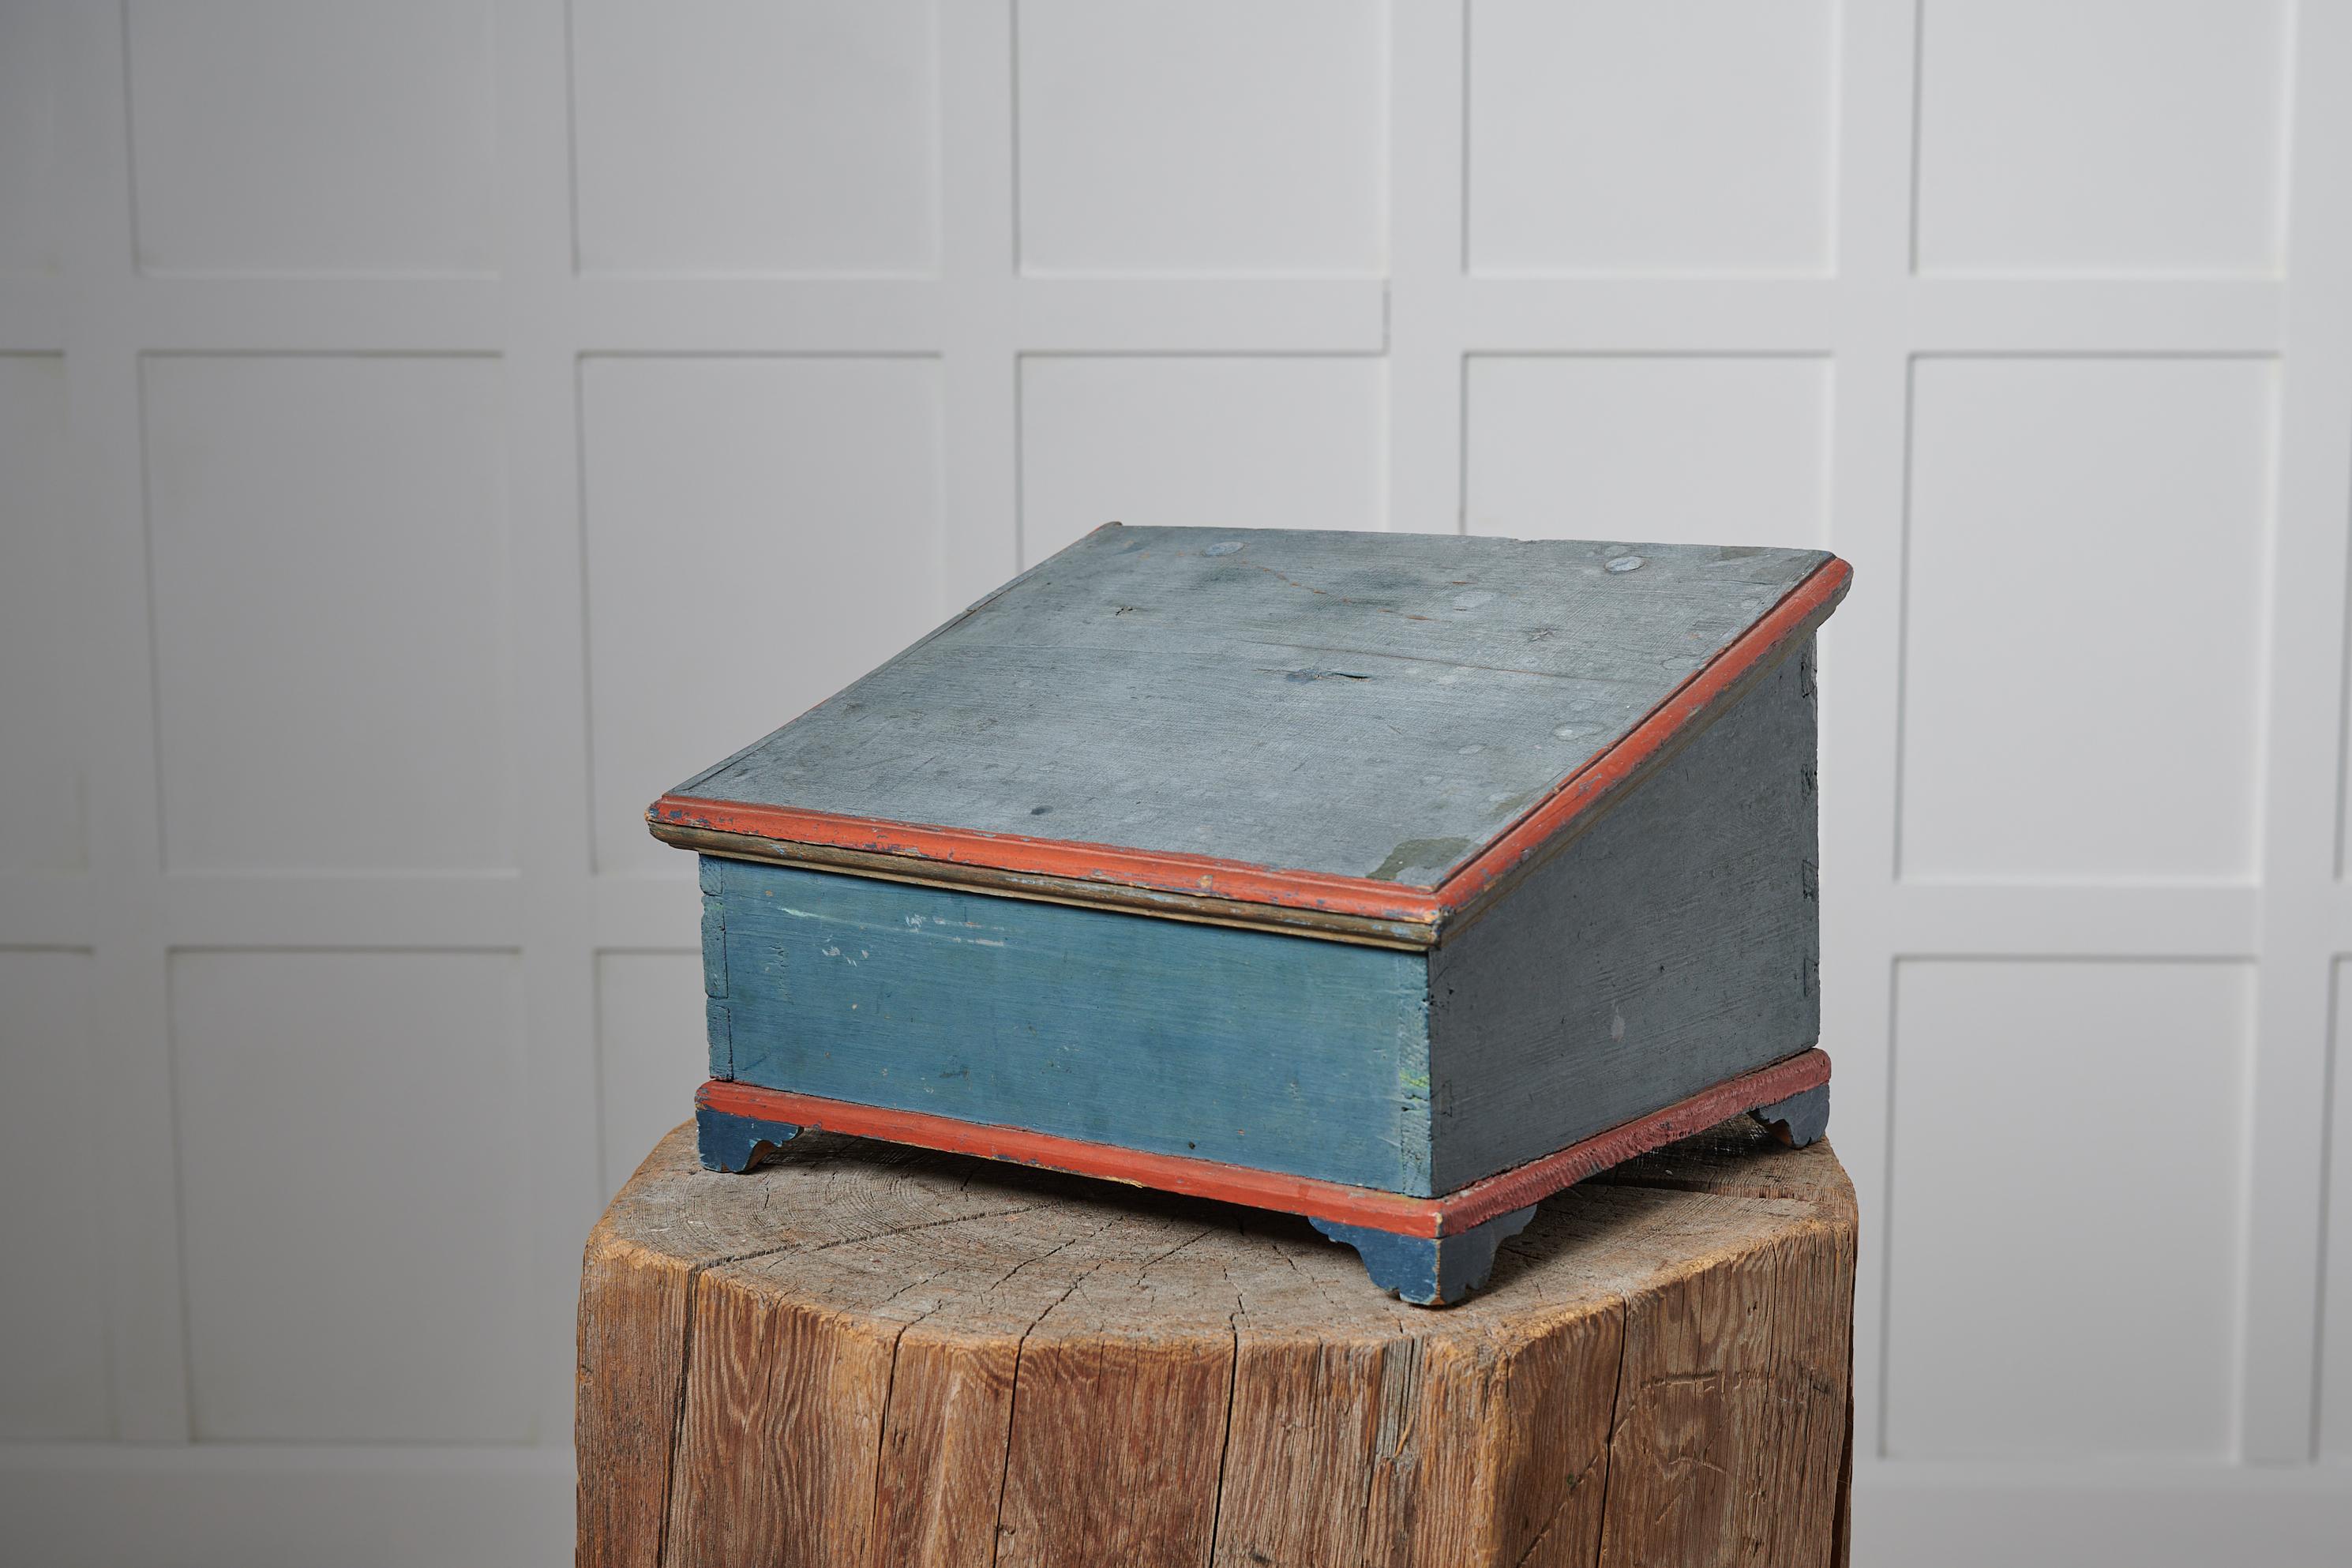 Rare boîte bleue ancienne d'art populaire suédois fabriquée au milieu des années 1800. La boîte est d'une taille attrayante et peut être utilisée pour tout, du rangement de documents et de papeterie à celui de parfums et de bijoux. La boîte est